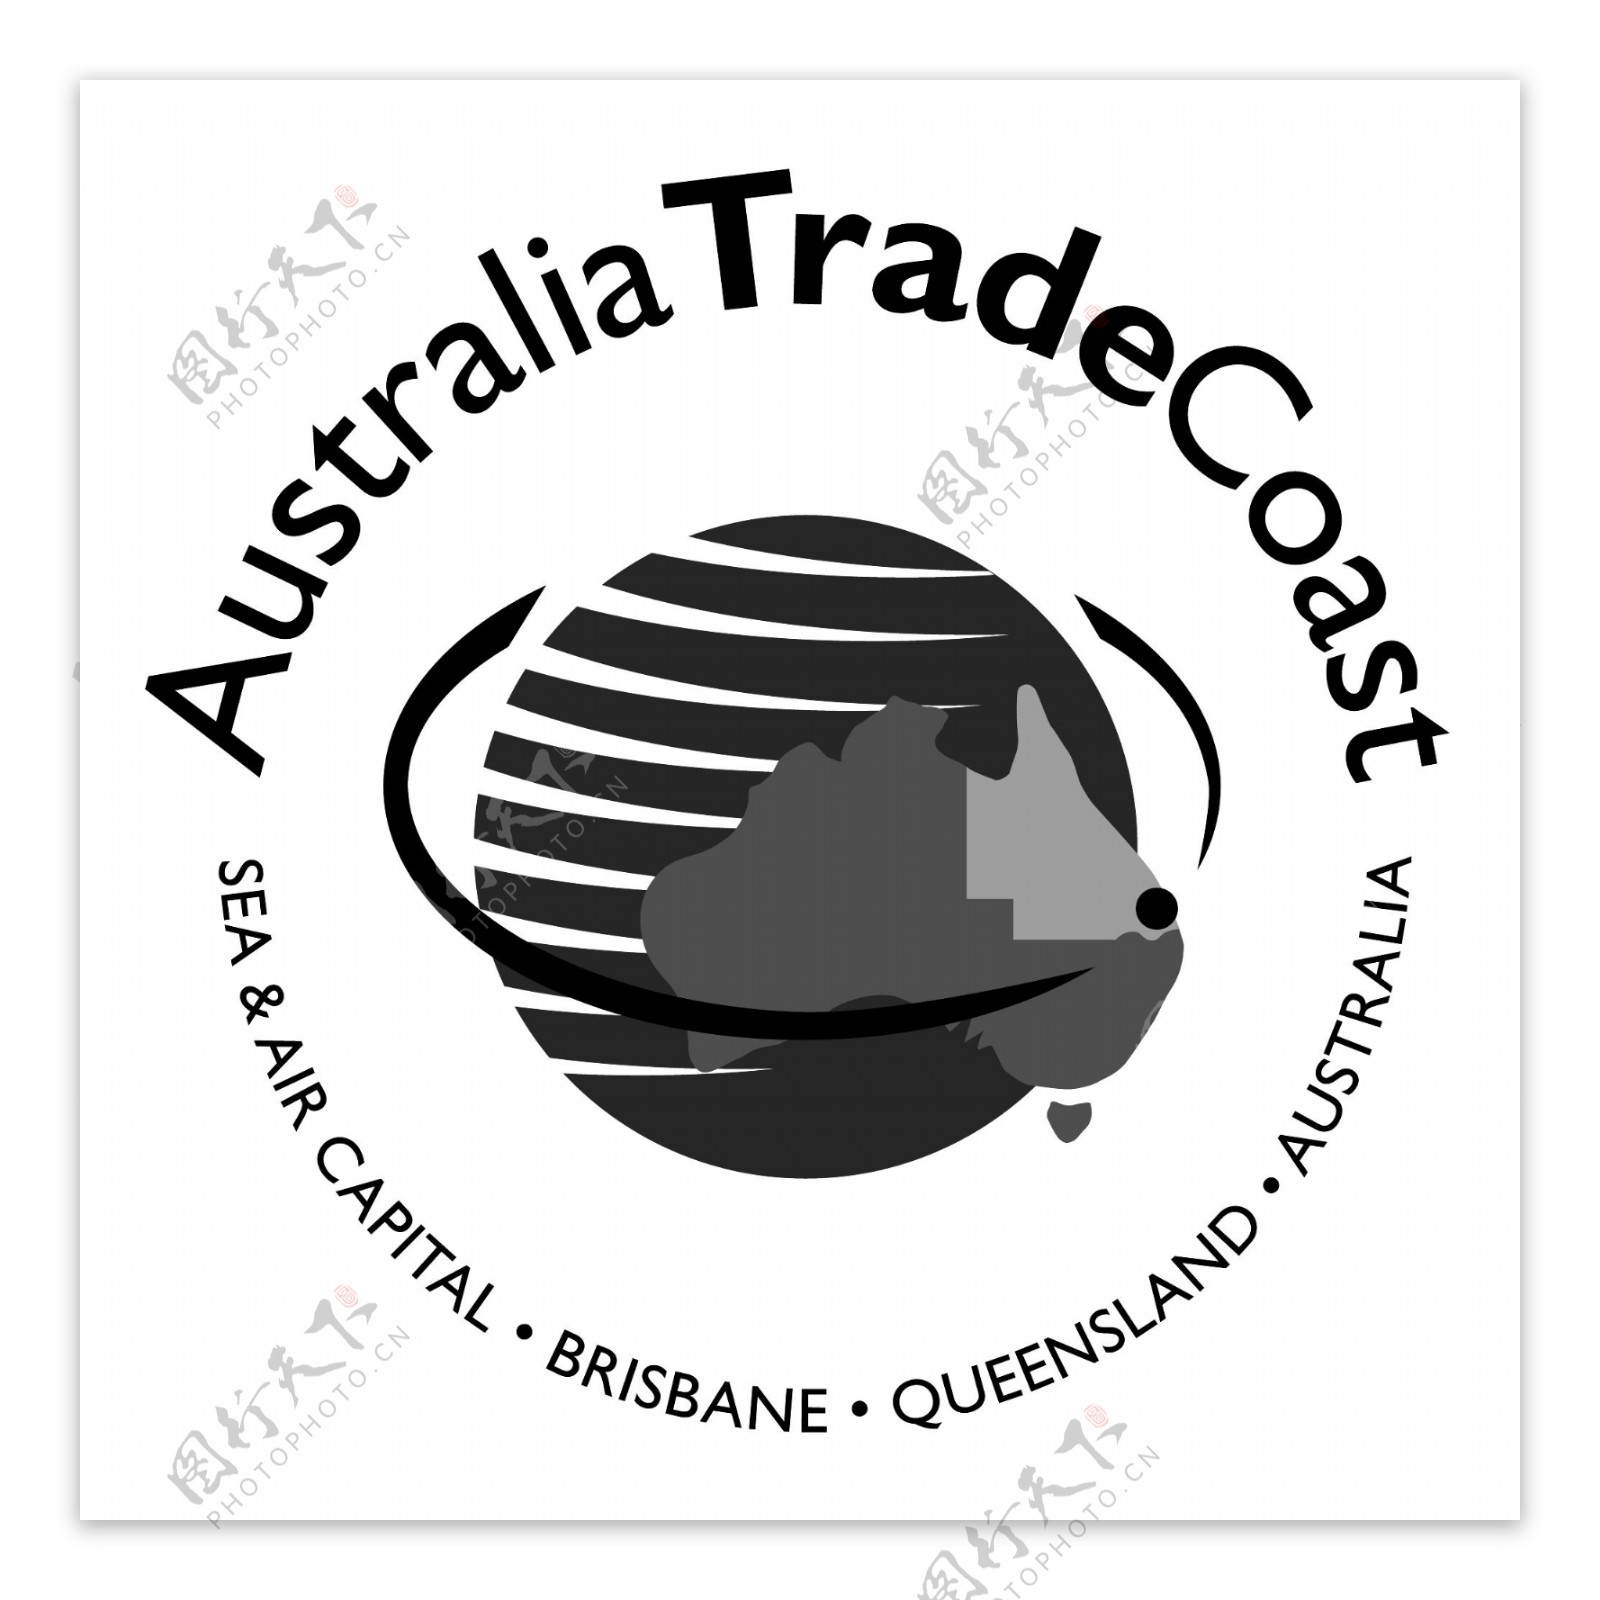 澳大利亚贸易海岸